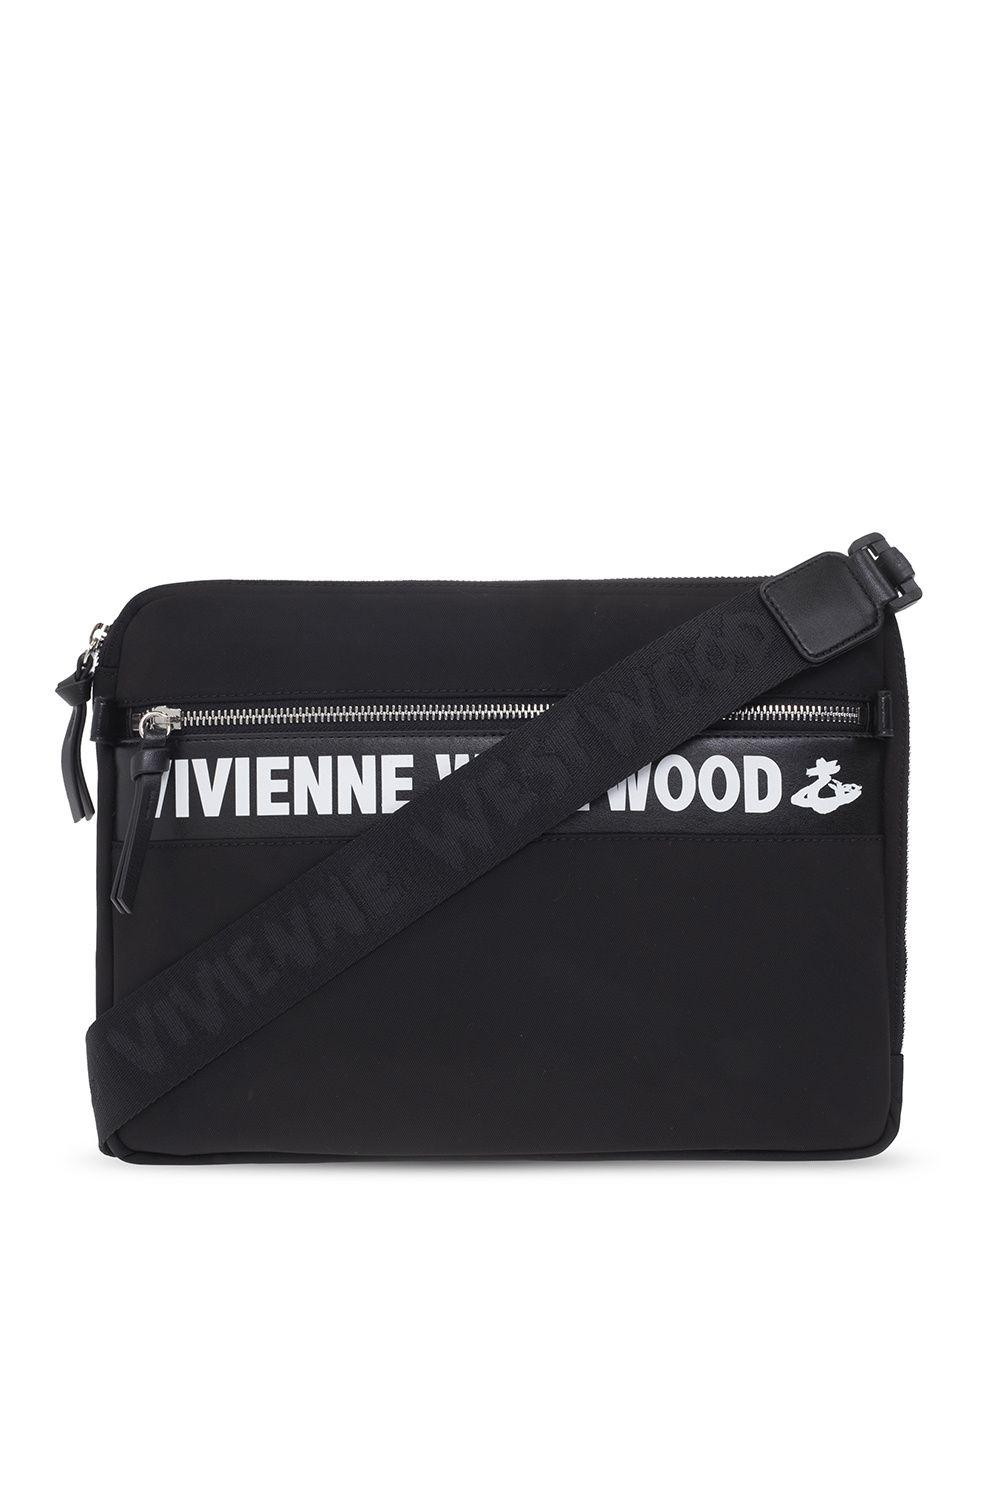 Vivienne Westwood 'lisa' Laptop Bag in Black | Lyst